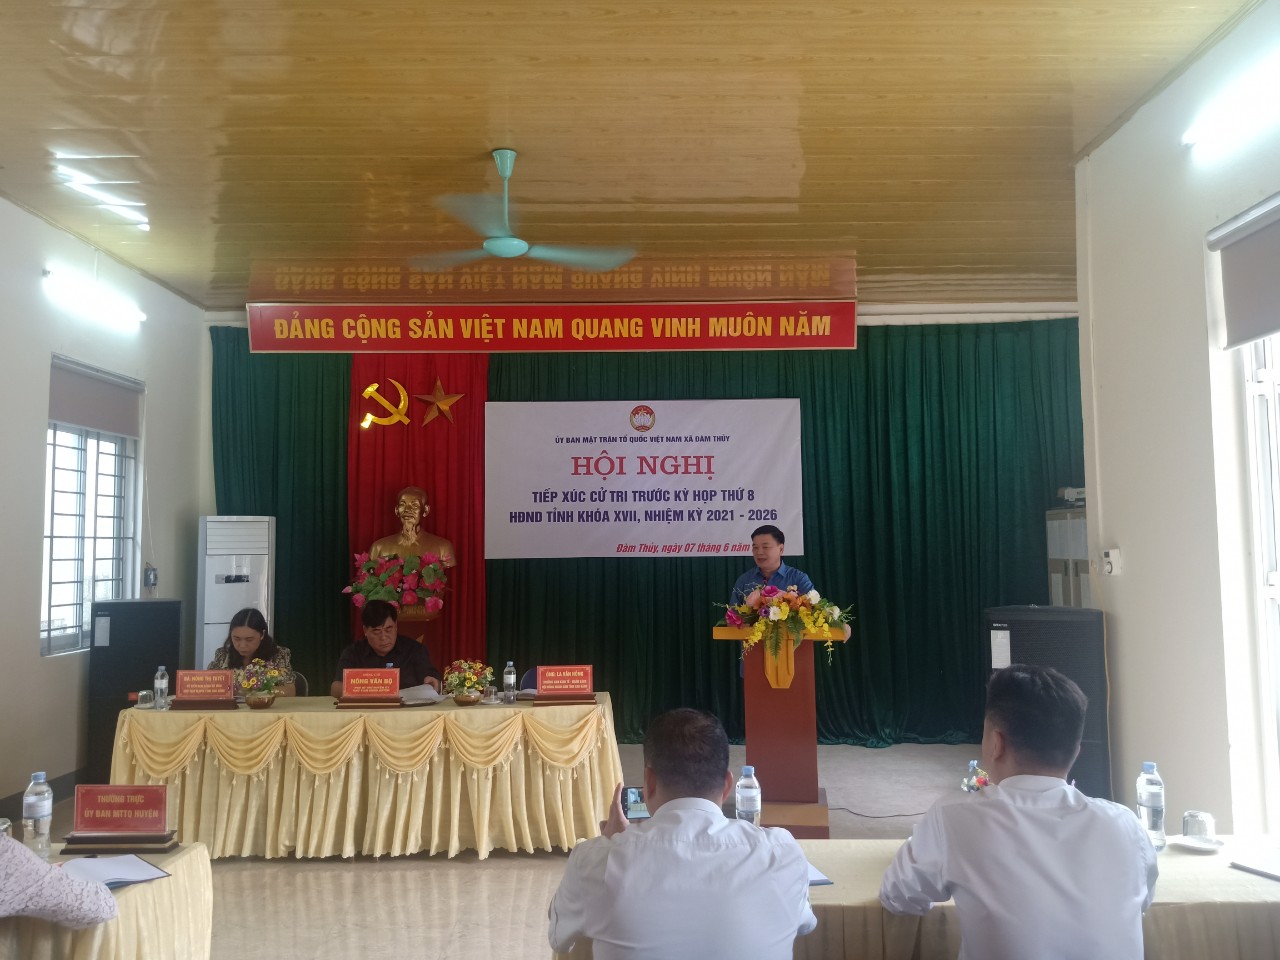 Đại biểu HĐND tỉnh tiếp xúc cử tri trước kỳ họp thứ 8 Hội đồng nhân dân tỉnh Cao Bằng khoá XVII, nhiệm kỳ 2021 – 2026 tại UBND xã Khâm Thành